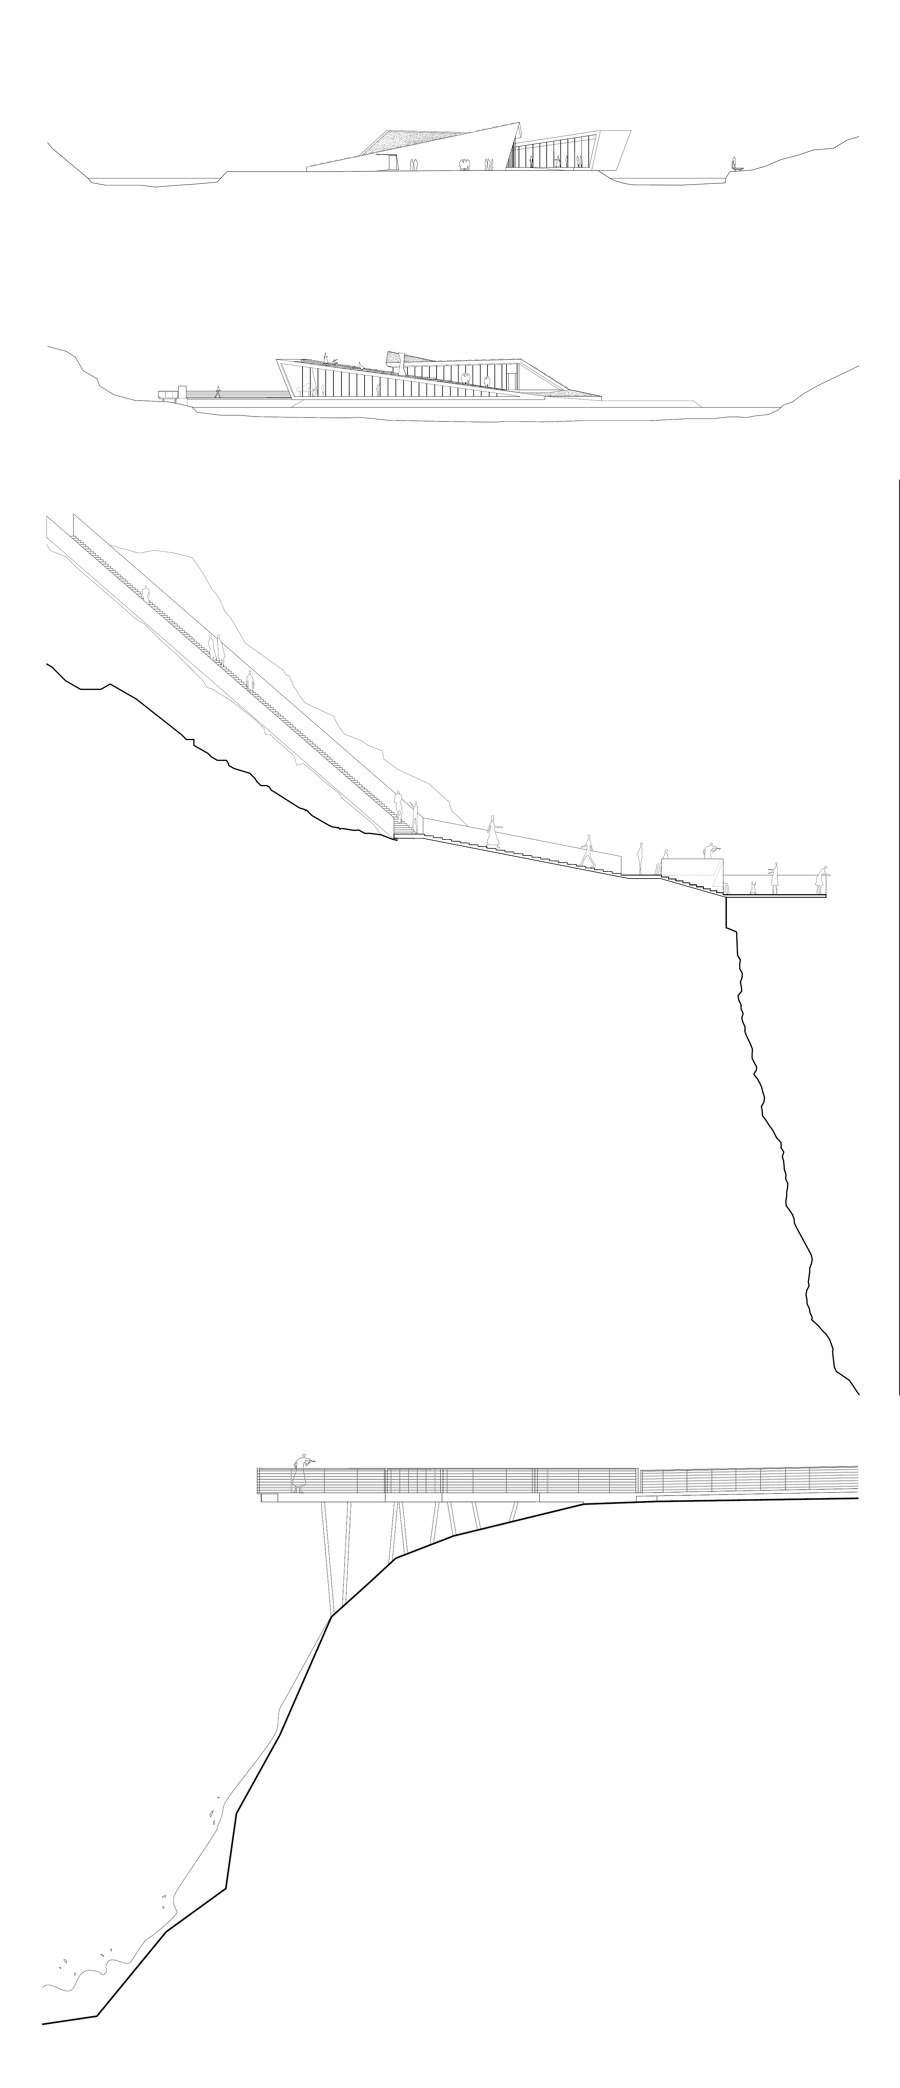 Trollstigen National Tourist Route von Reiulf Ramstad Arkitekter | Denkmäler/Skulpturen/Aussichtsplattformen